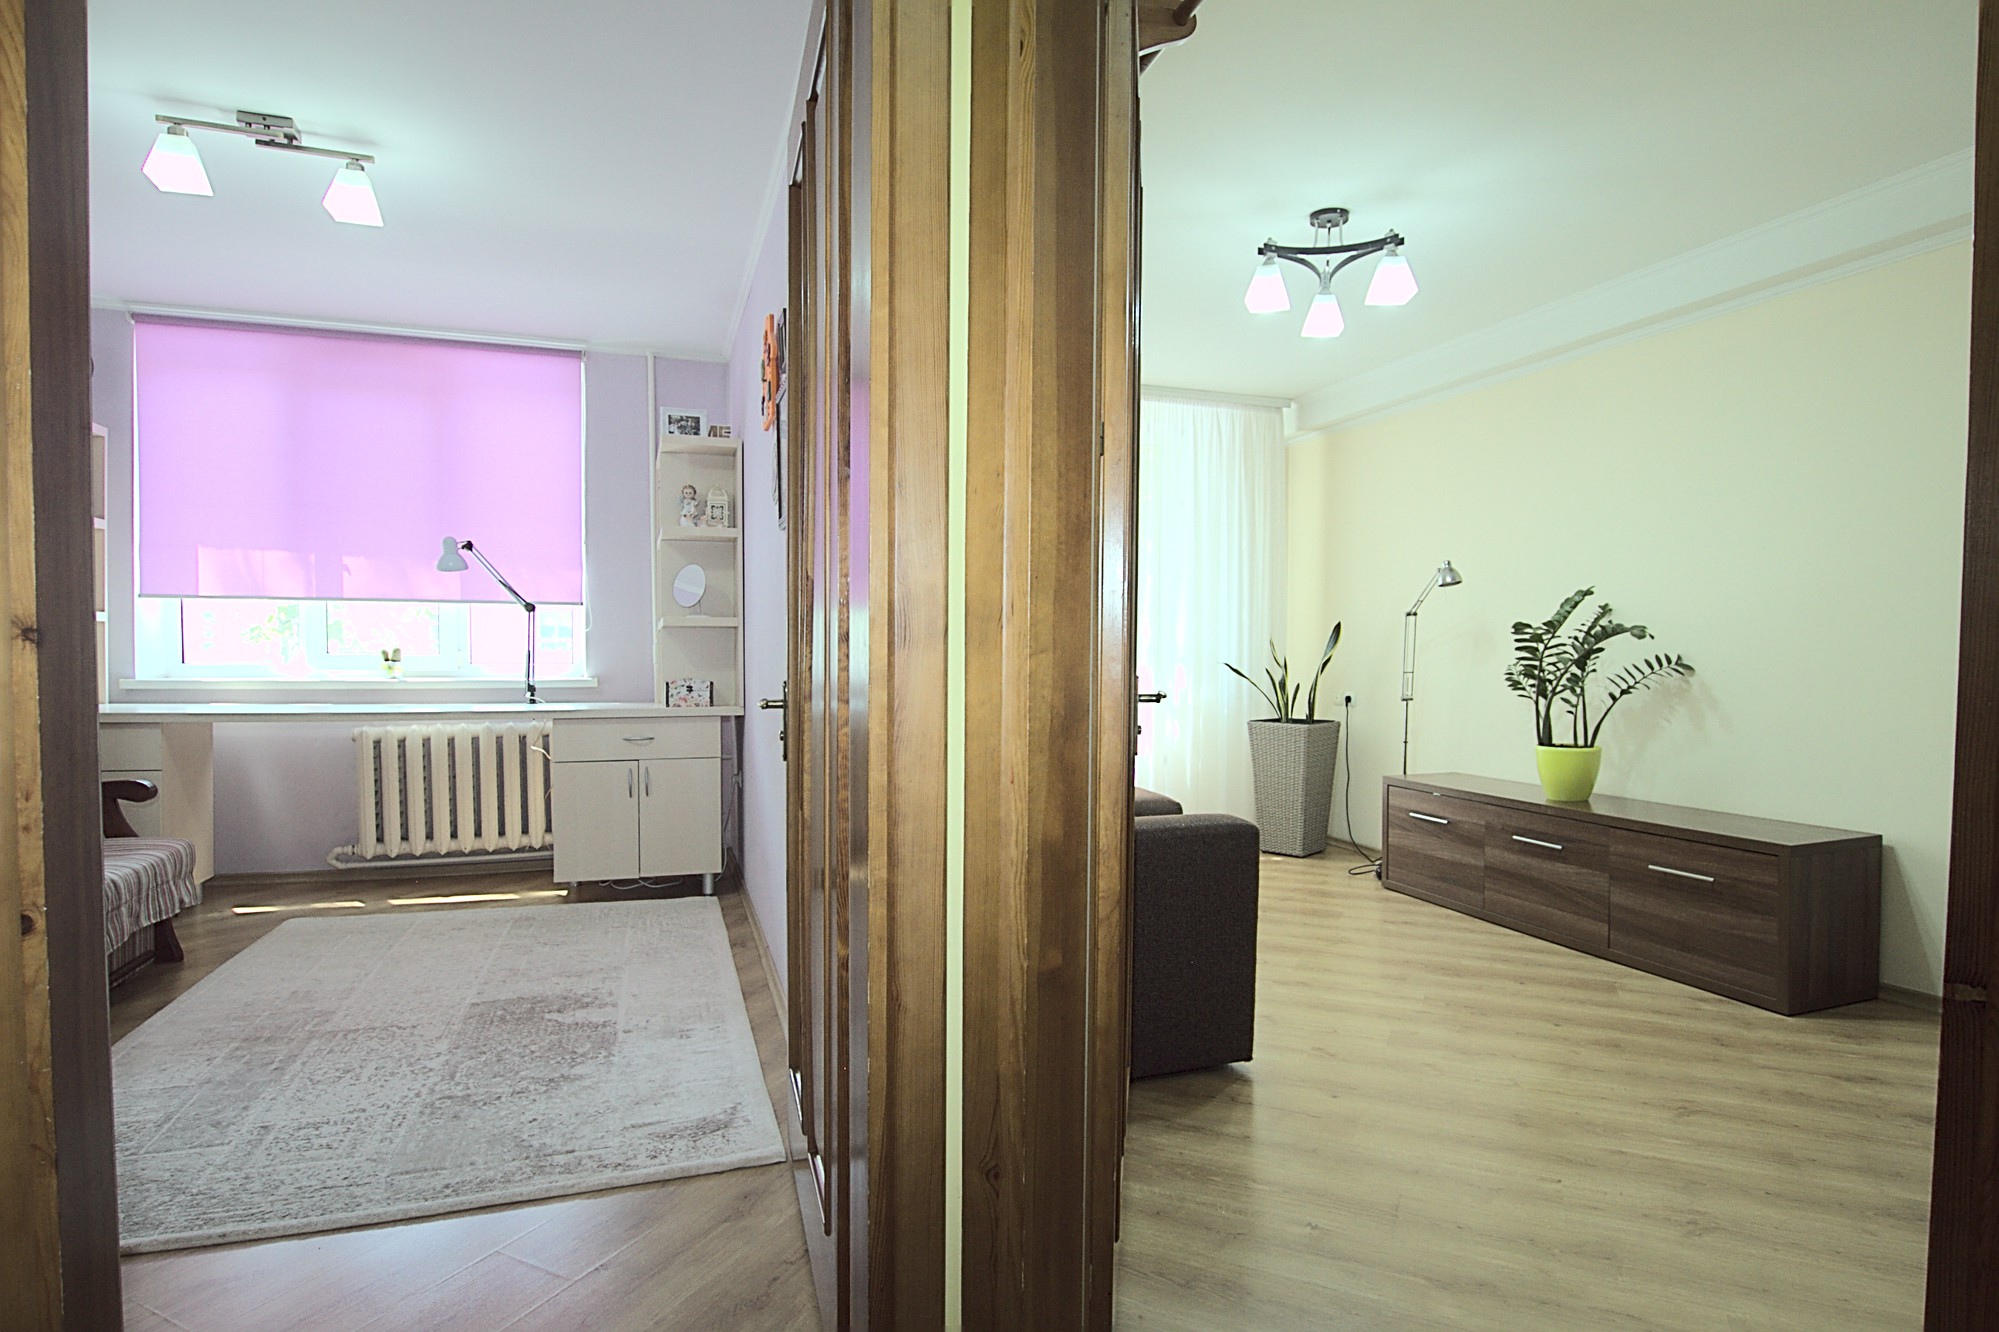 Lavender Apartment это квартира в аренду в Кишиневе имеющая 2 комнаты в аренду в Кишиневе - Chisinau, Moldova